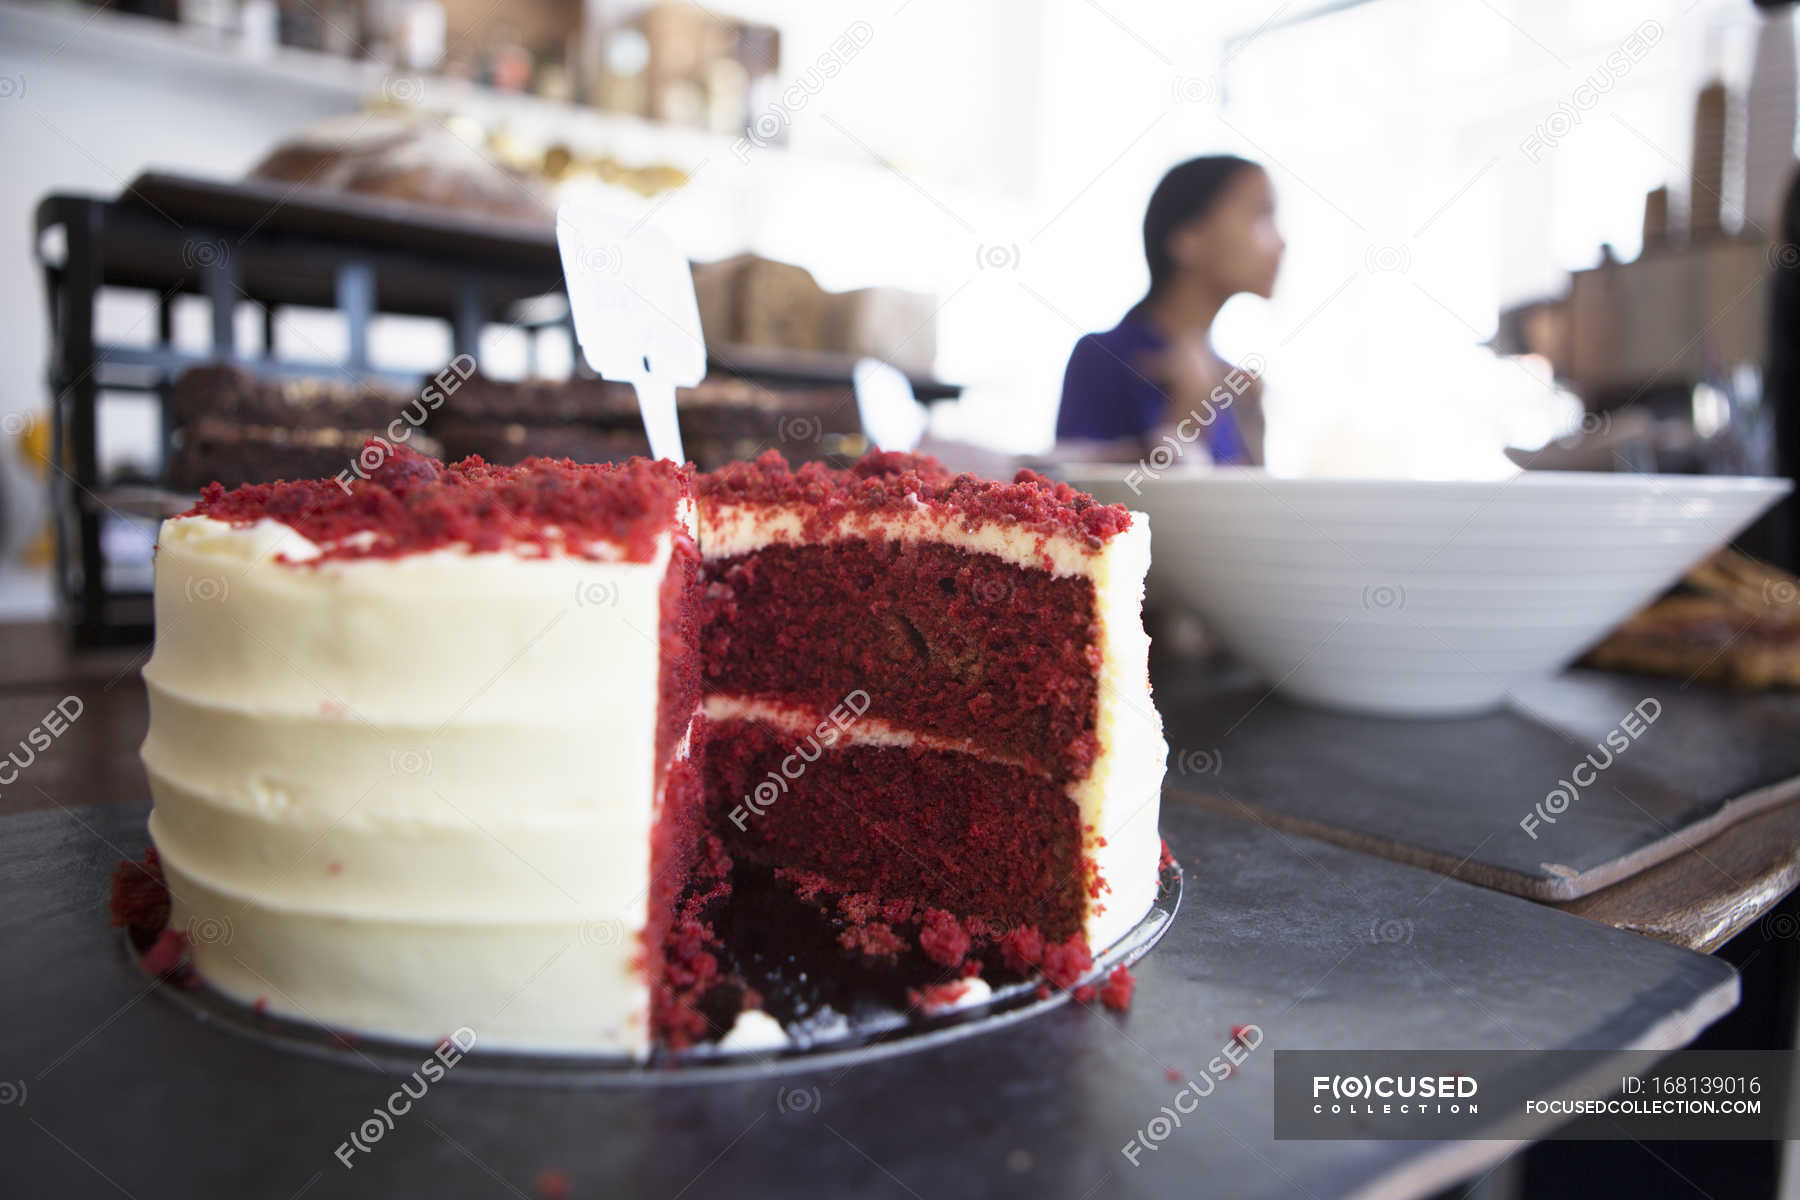 Bánh Red Velvet là món bánh đầy quyến rũ, với màu sắc lôi cuốn và hương vị tuyệt vời. Nếu bạn yêu thích ẩm thực và muốn thưởng thức một món bánh thật ngon miệng, hãy xem những hình ảnh liên quan đến bánh Red Velvet này.